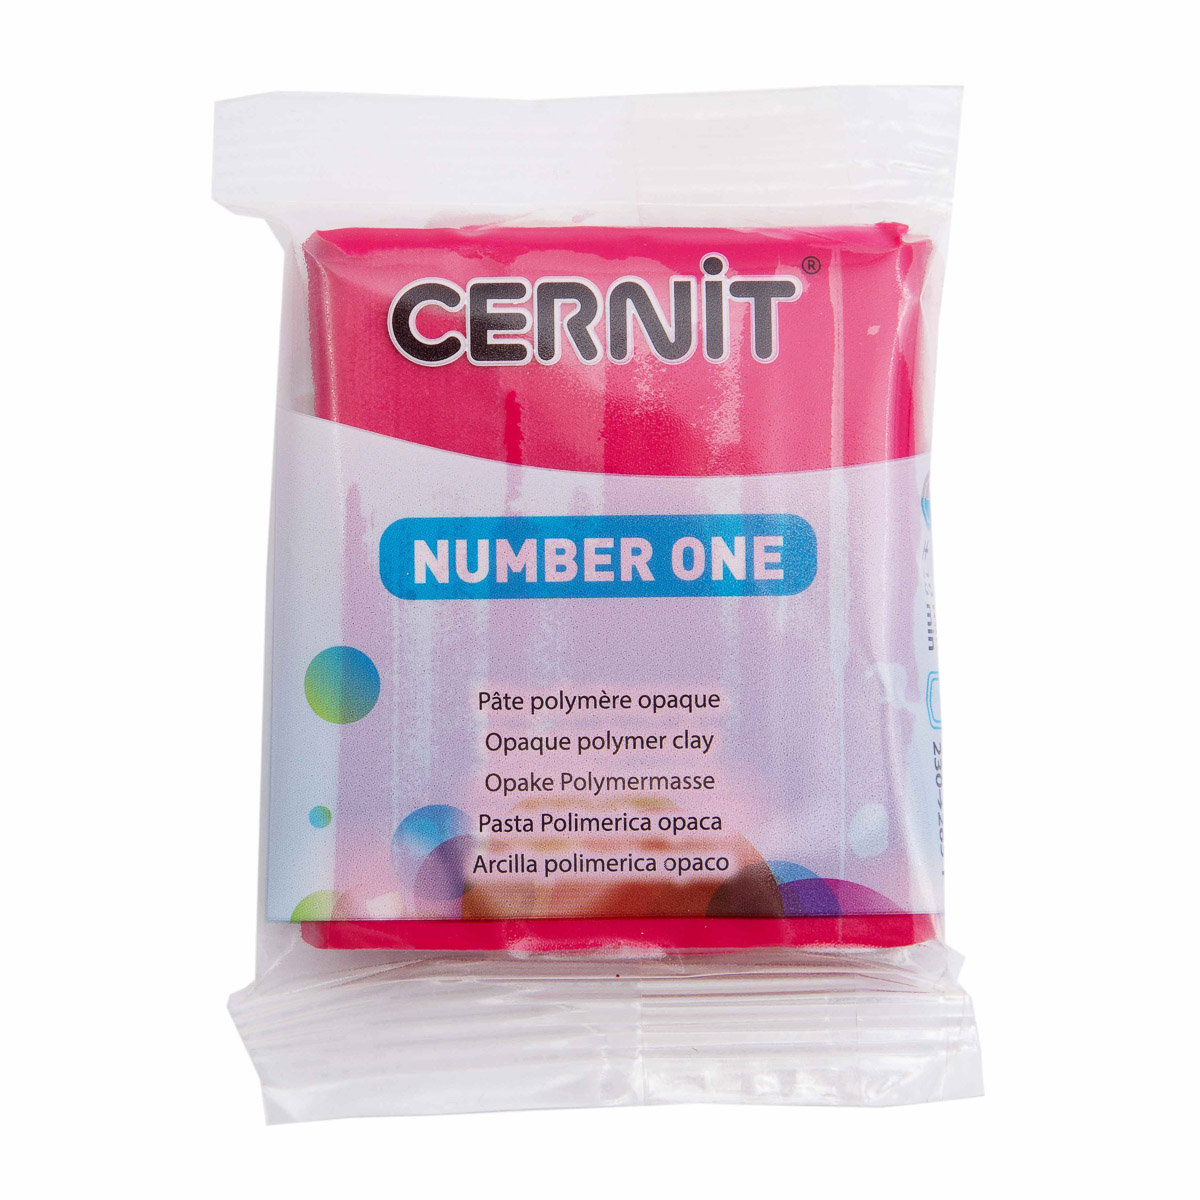 Пластика полимерная запекаемая Cernit № 1, CE0900056  56-62 г